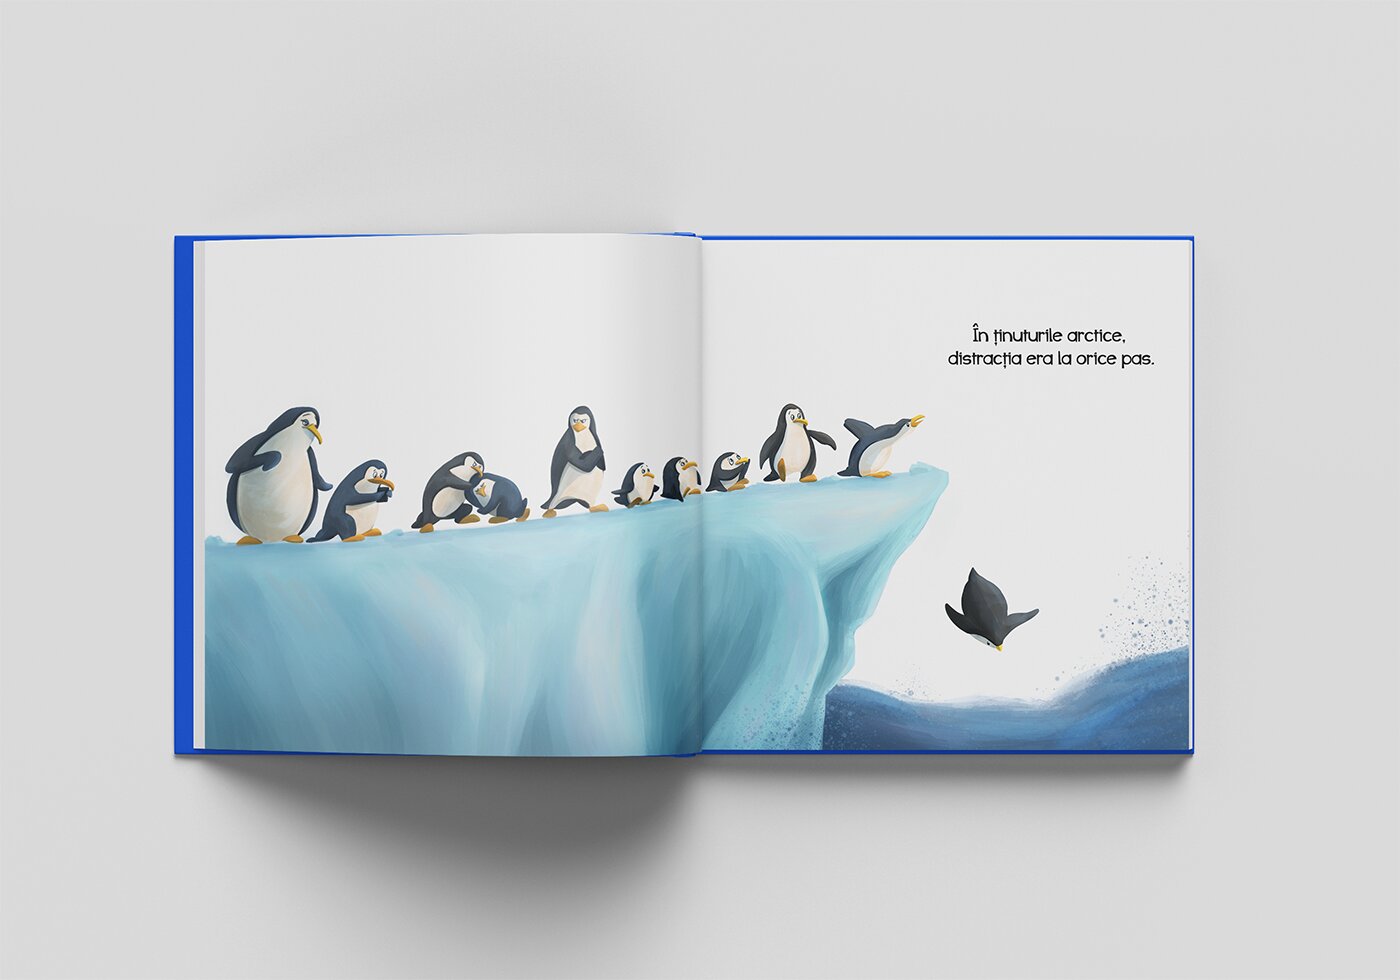 penguins illustration